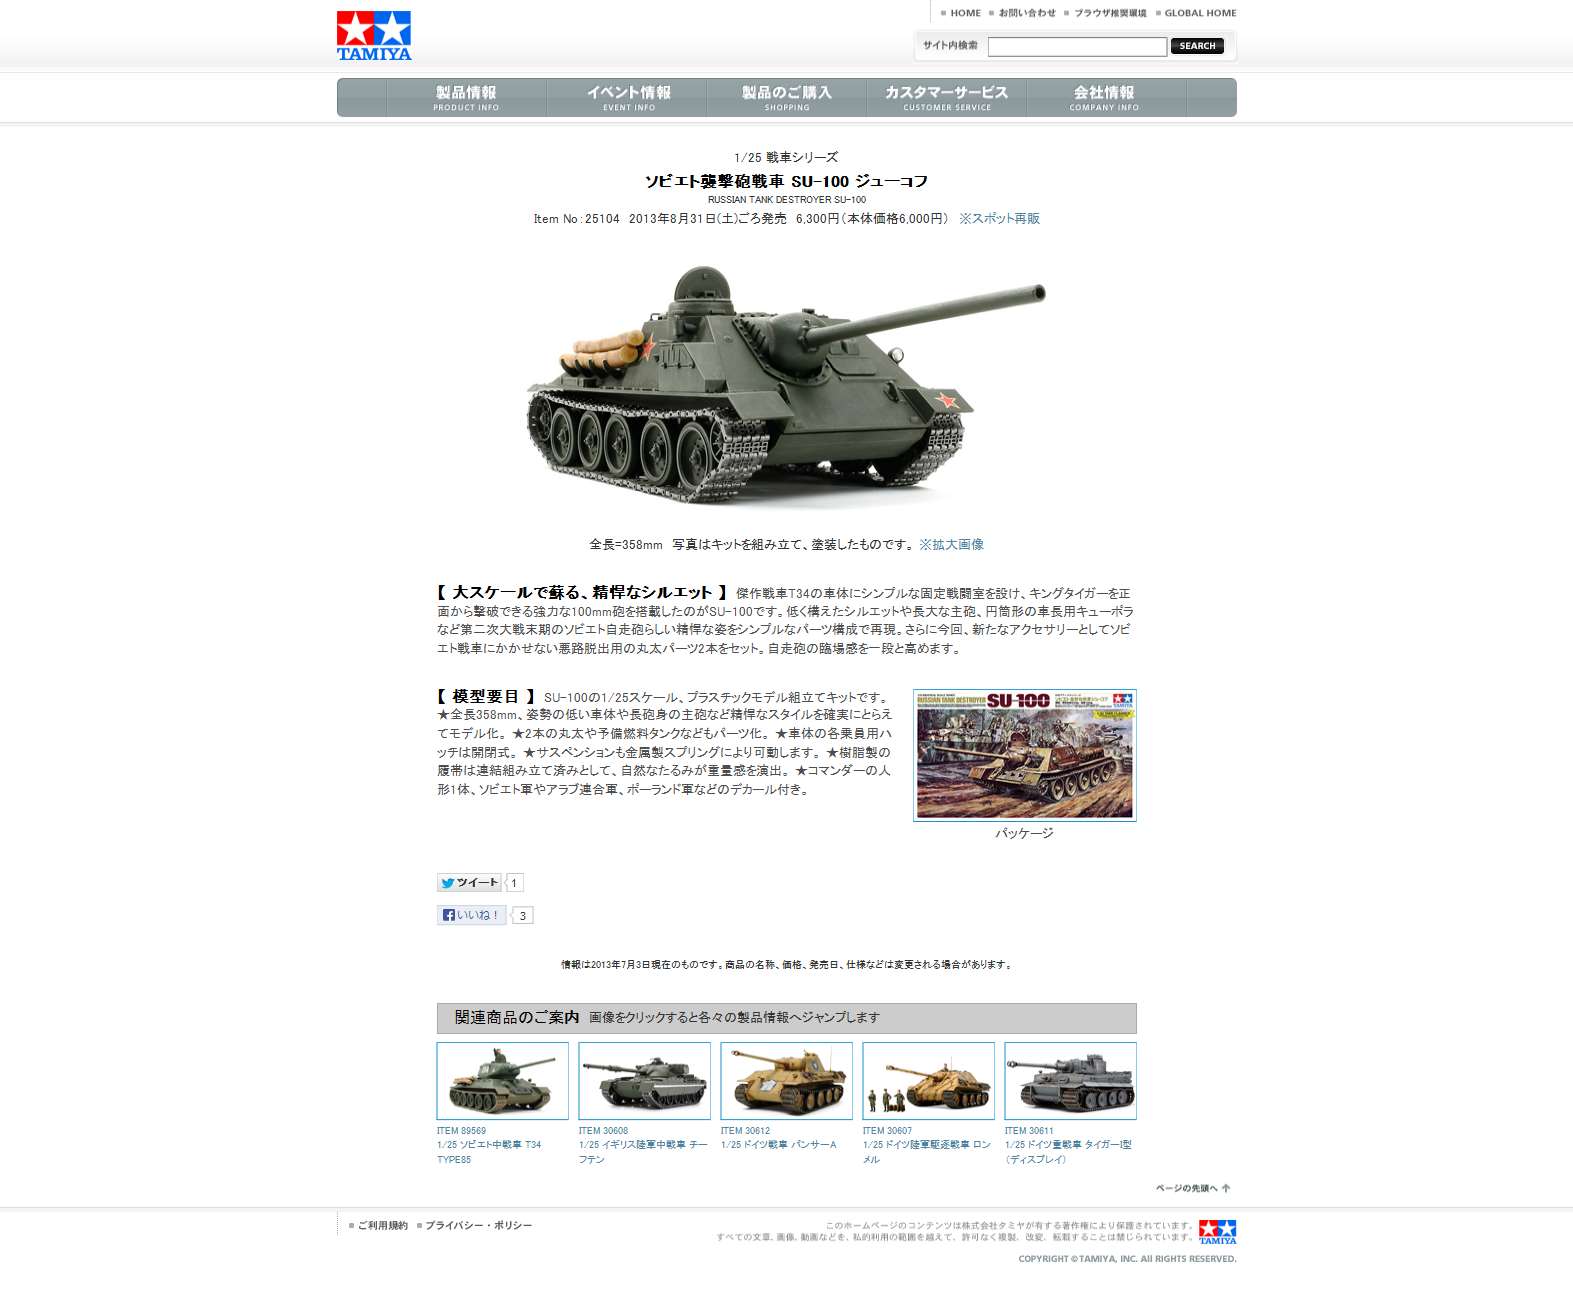 ミリタリープラモデルセット タミヤ 戦車+inforsante.fr